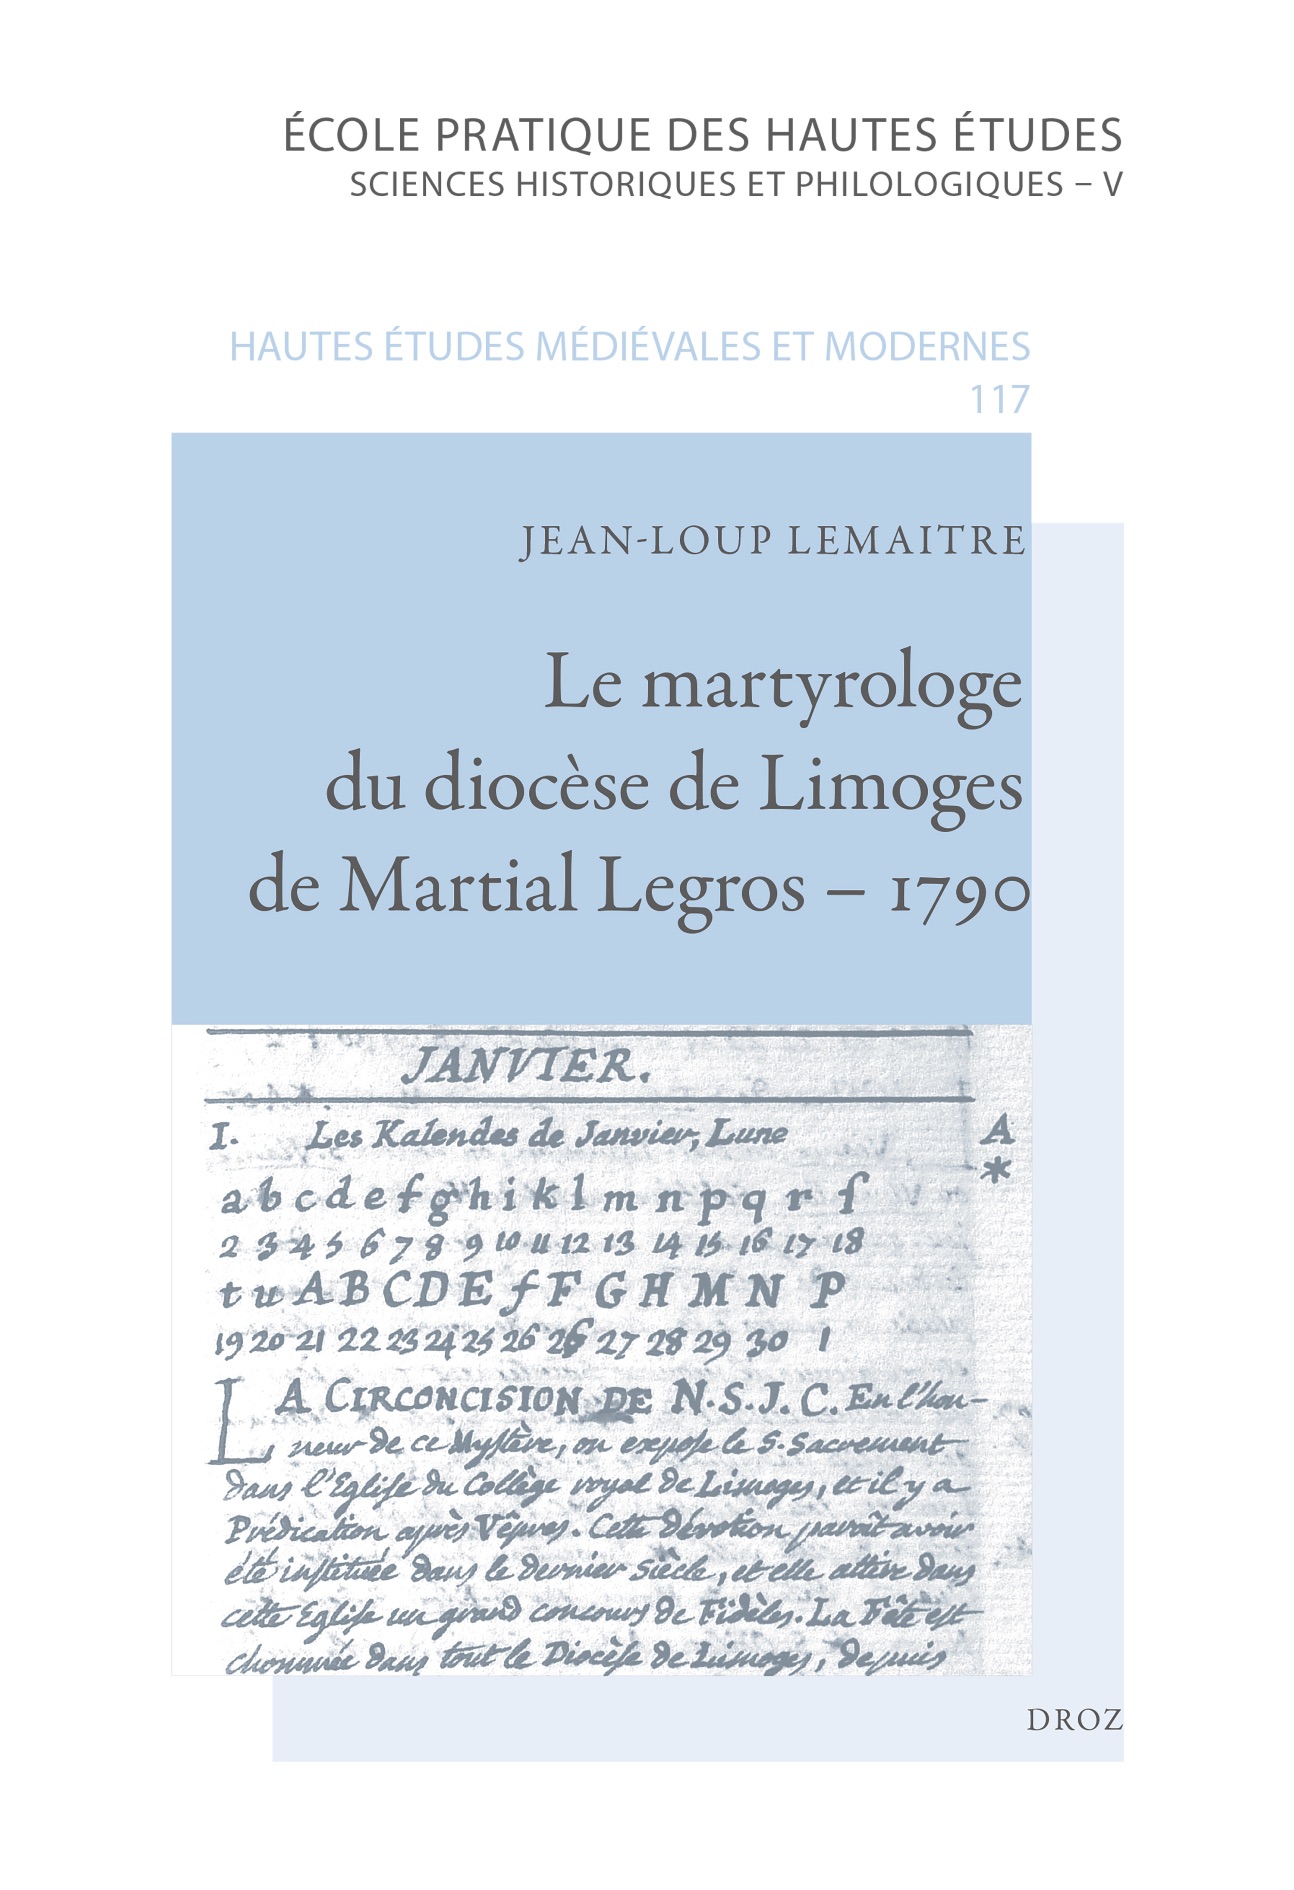 Jean-Loup Lemaitre, Le martyrologe du diocèse de Limoges de Martial Legros – 1790.